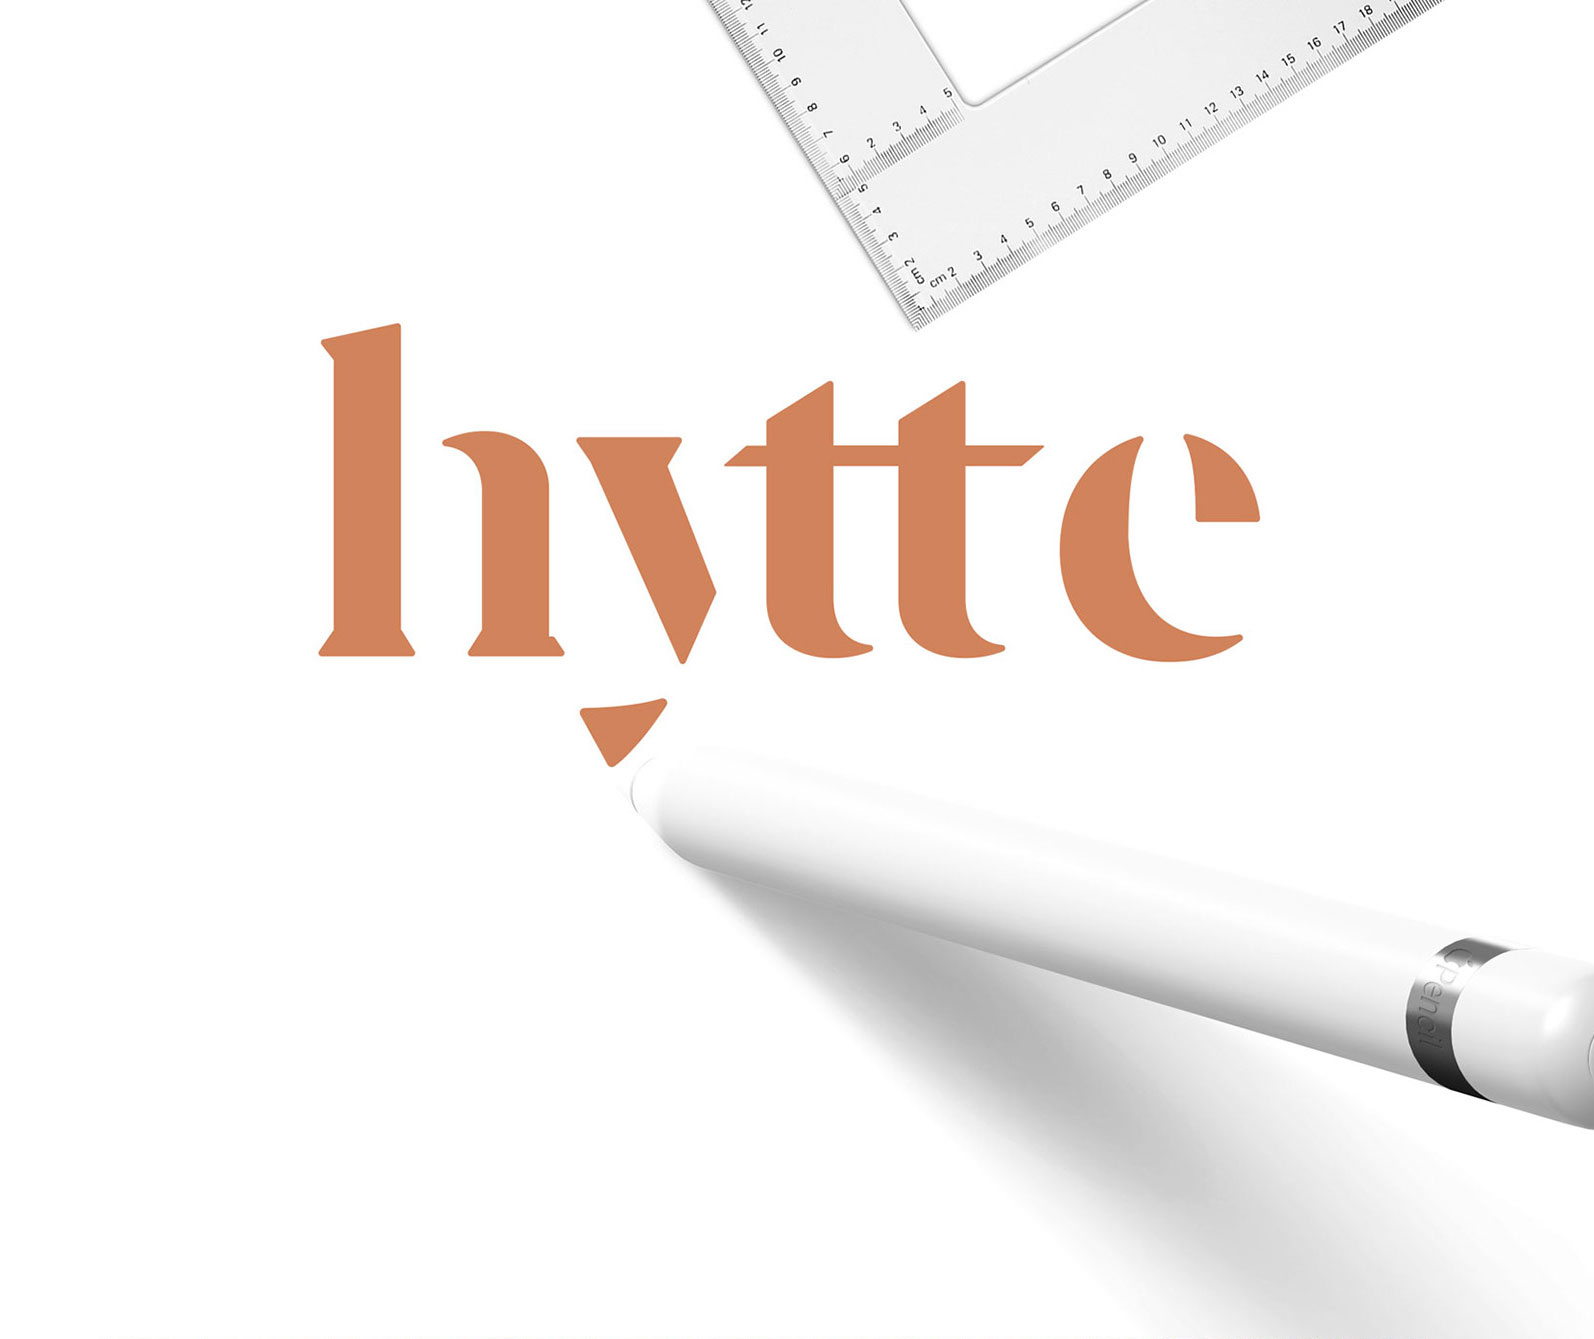 logo HYTTE